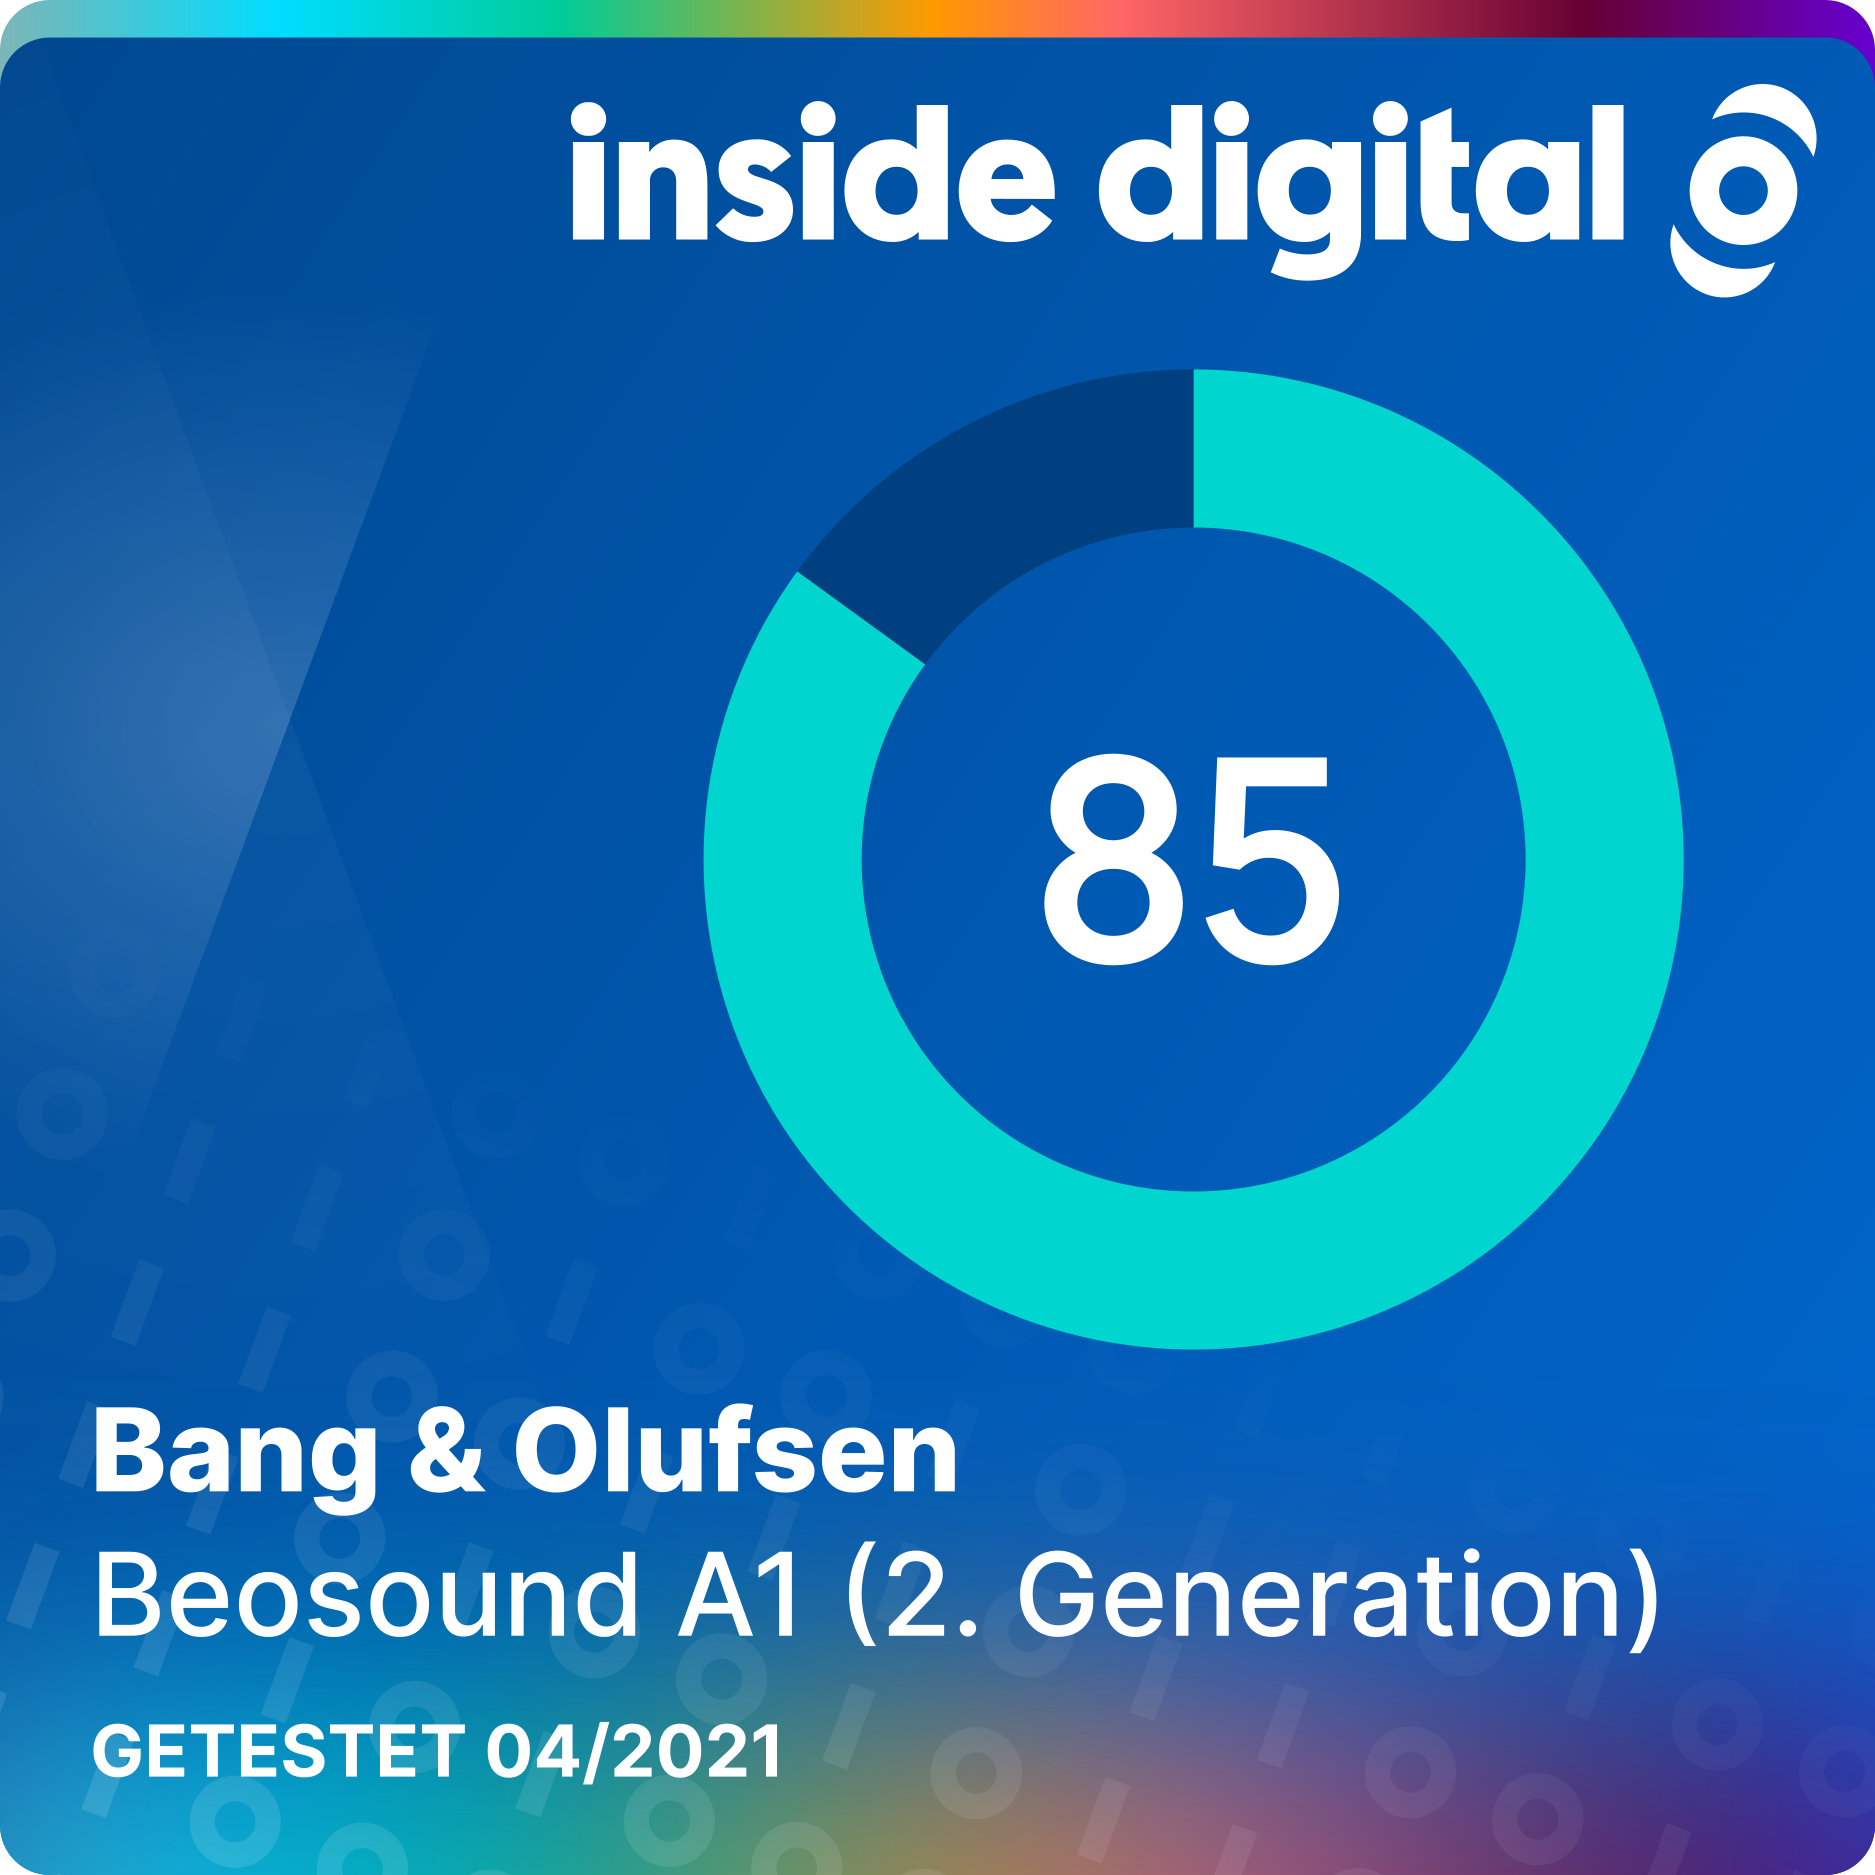 Bang & Olufsen Beosund A1 (2. Generation) im Test